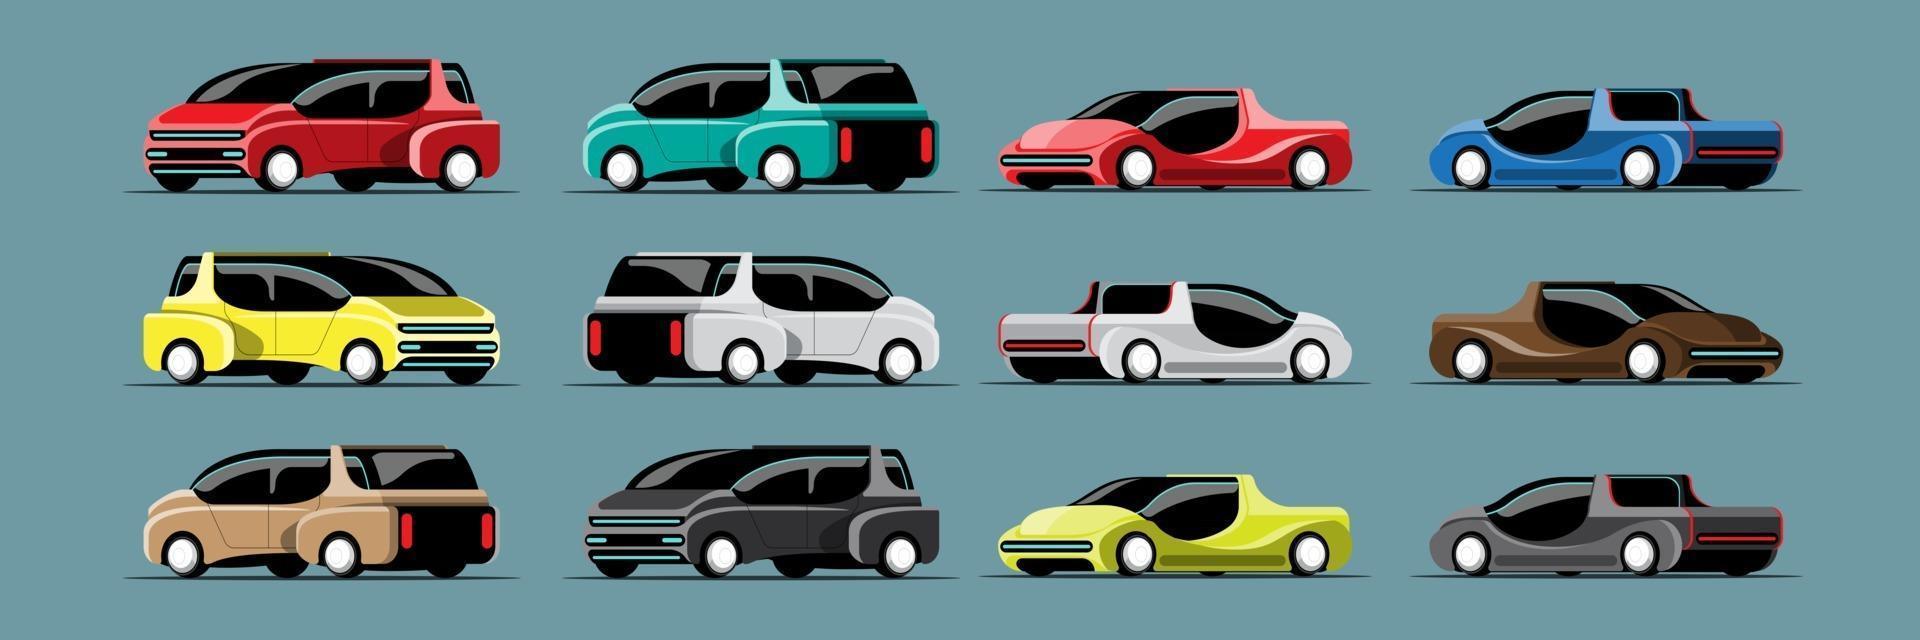 conjunto de carros de alta tecnologia em vetor de design moderno